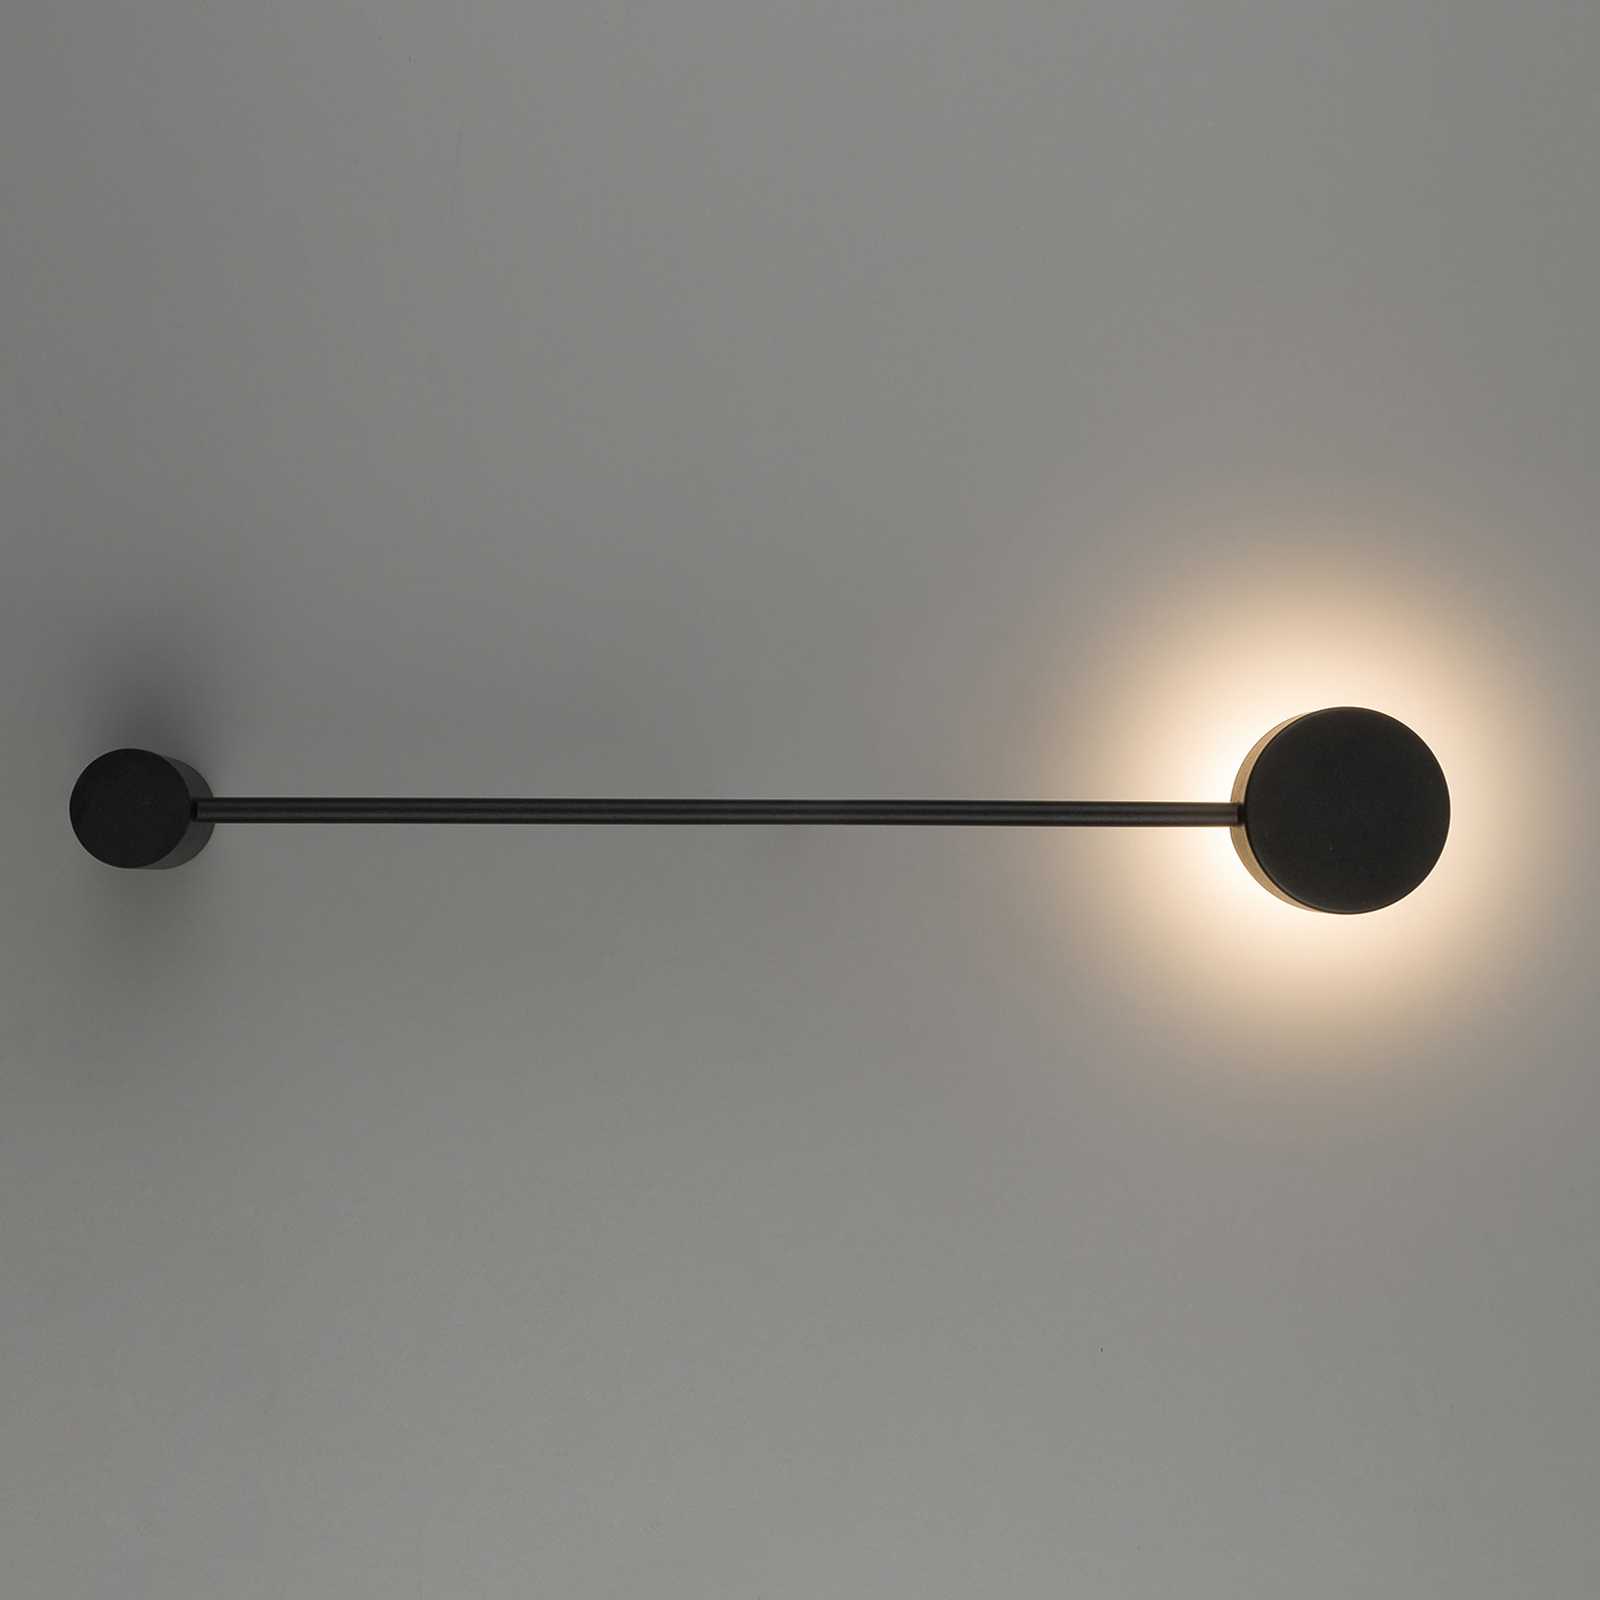 Vägglampa Orbit I 40, svart, 1 lampa